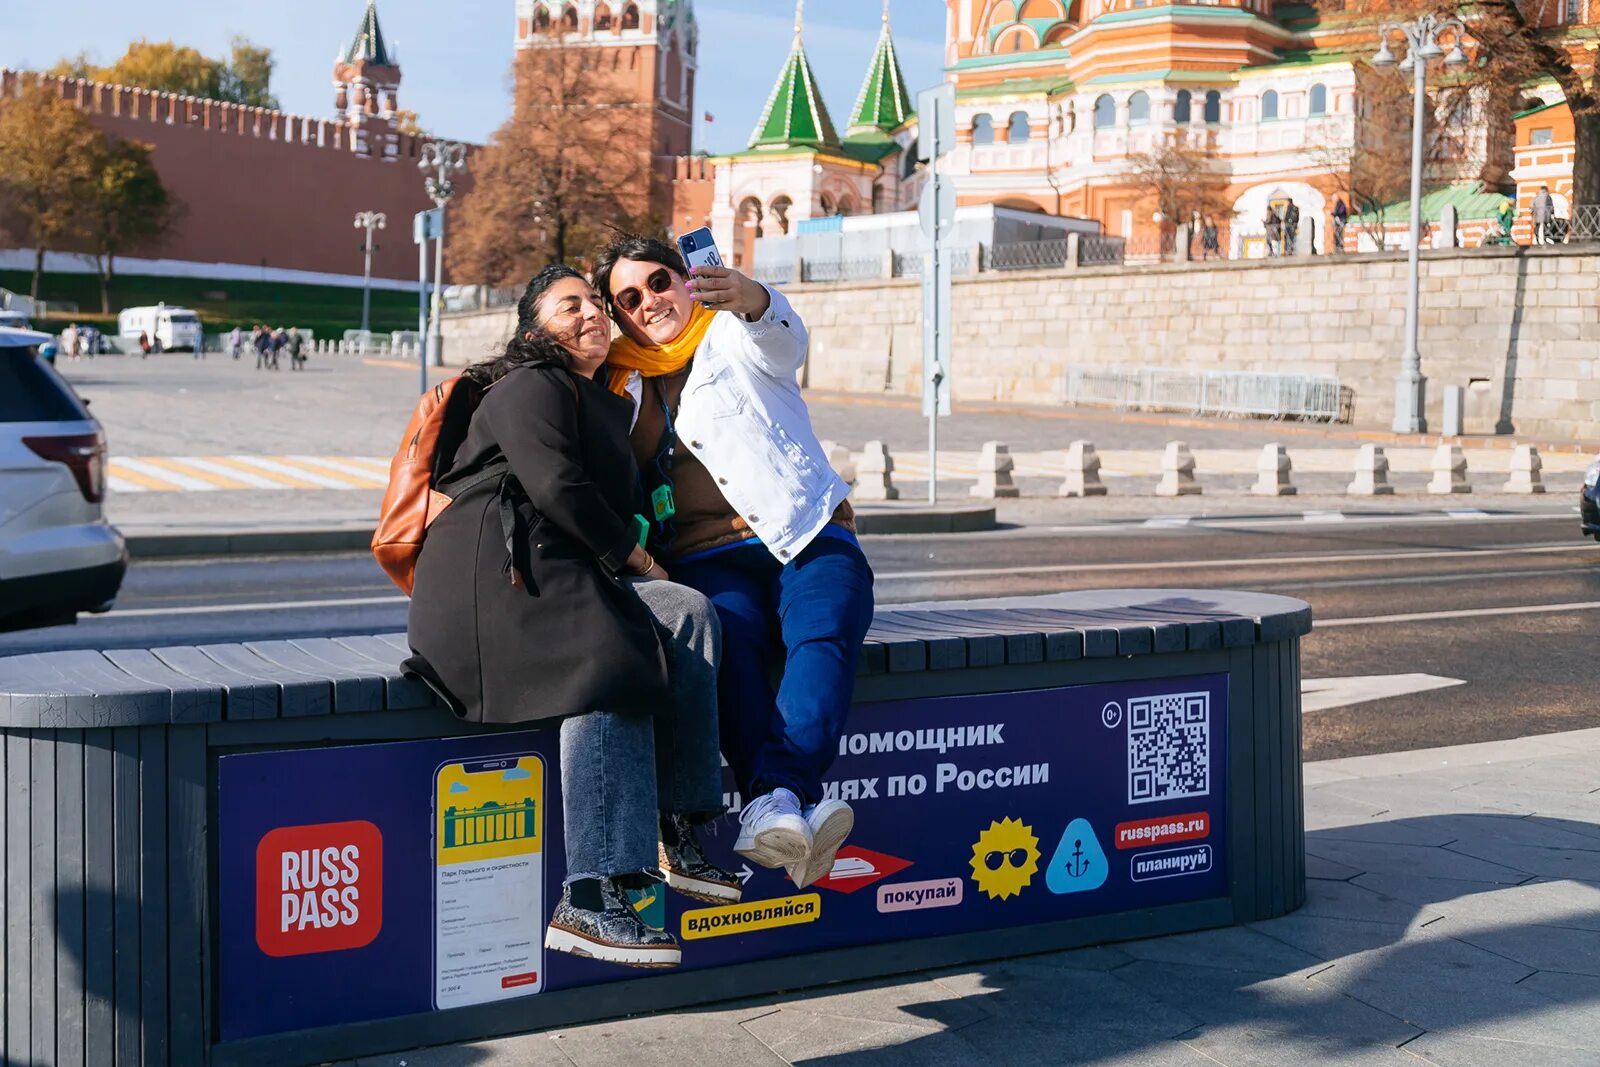 Туристы в городе. Москва люди. Иностранцы в Москве. Москва фото туристов. Покажи москву конкурс